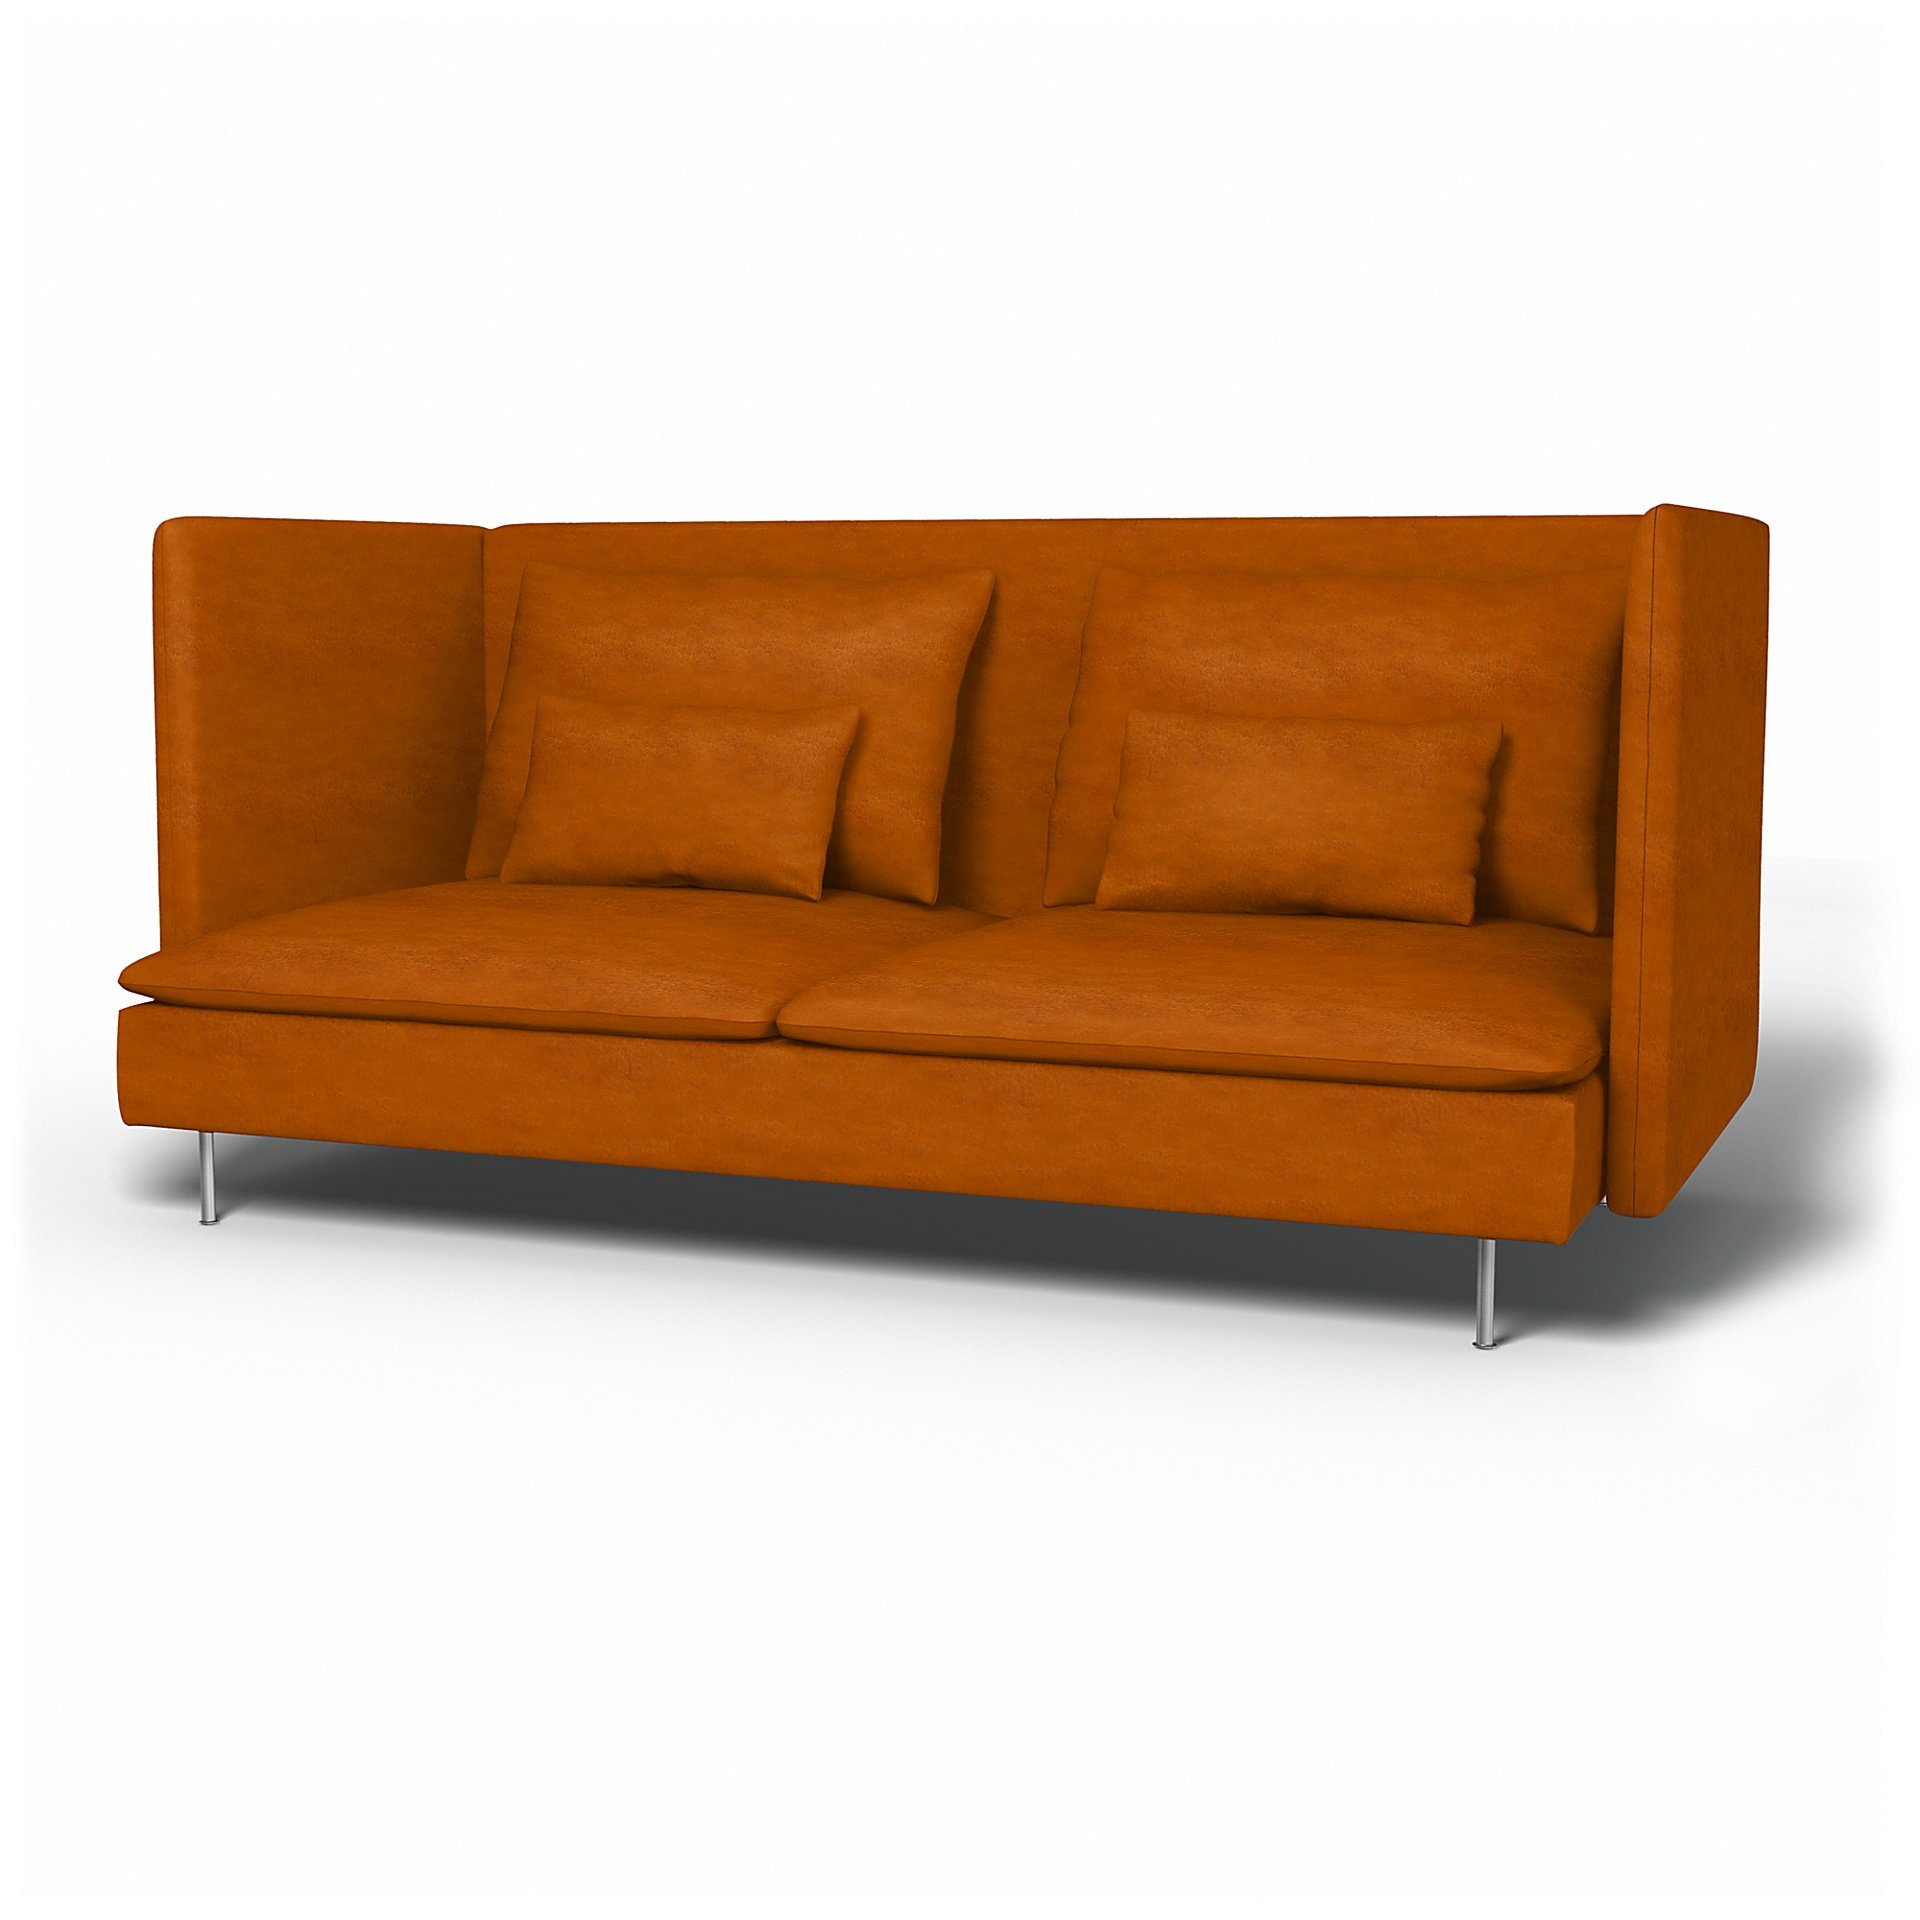 IKEA - Soderhamn 3 Seater Sofa Cover with High Back, Cognac, Velvet - Bemz